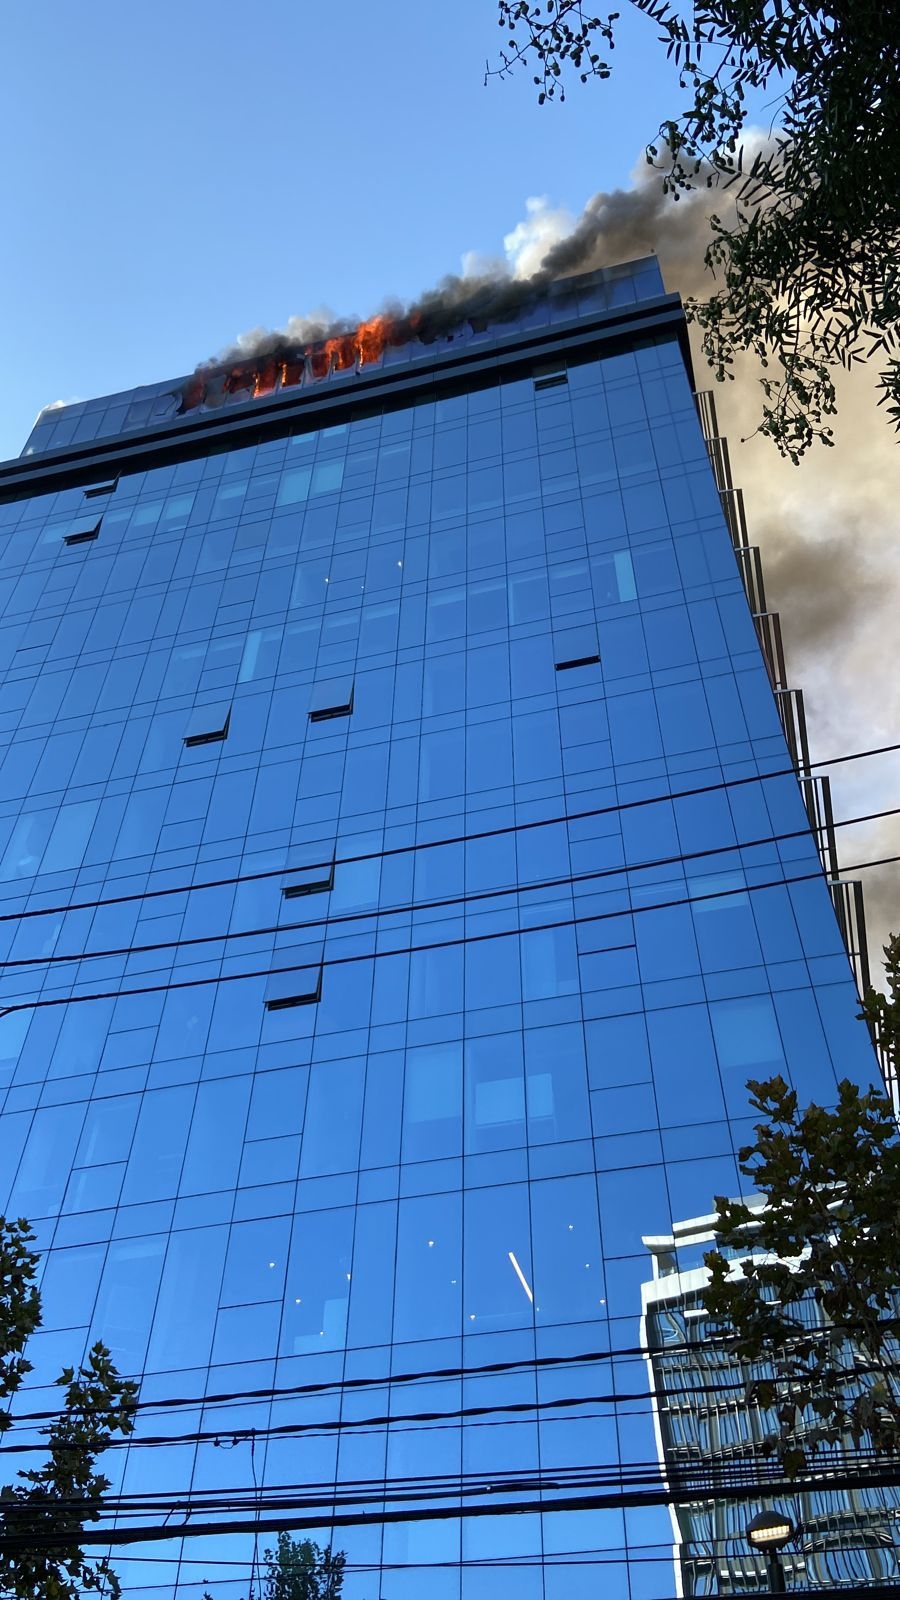 Incendio consume un edificio de oficinas en Chile